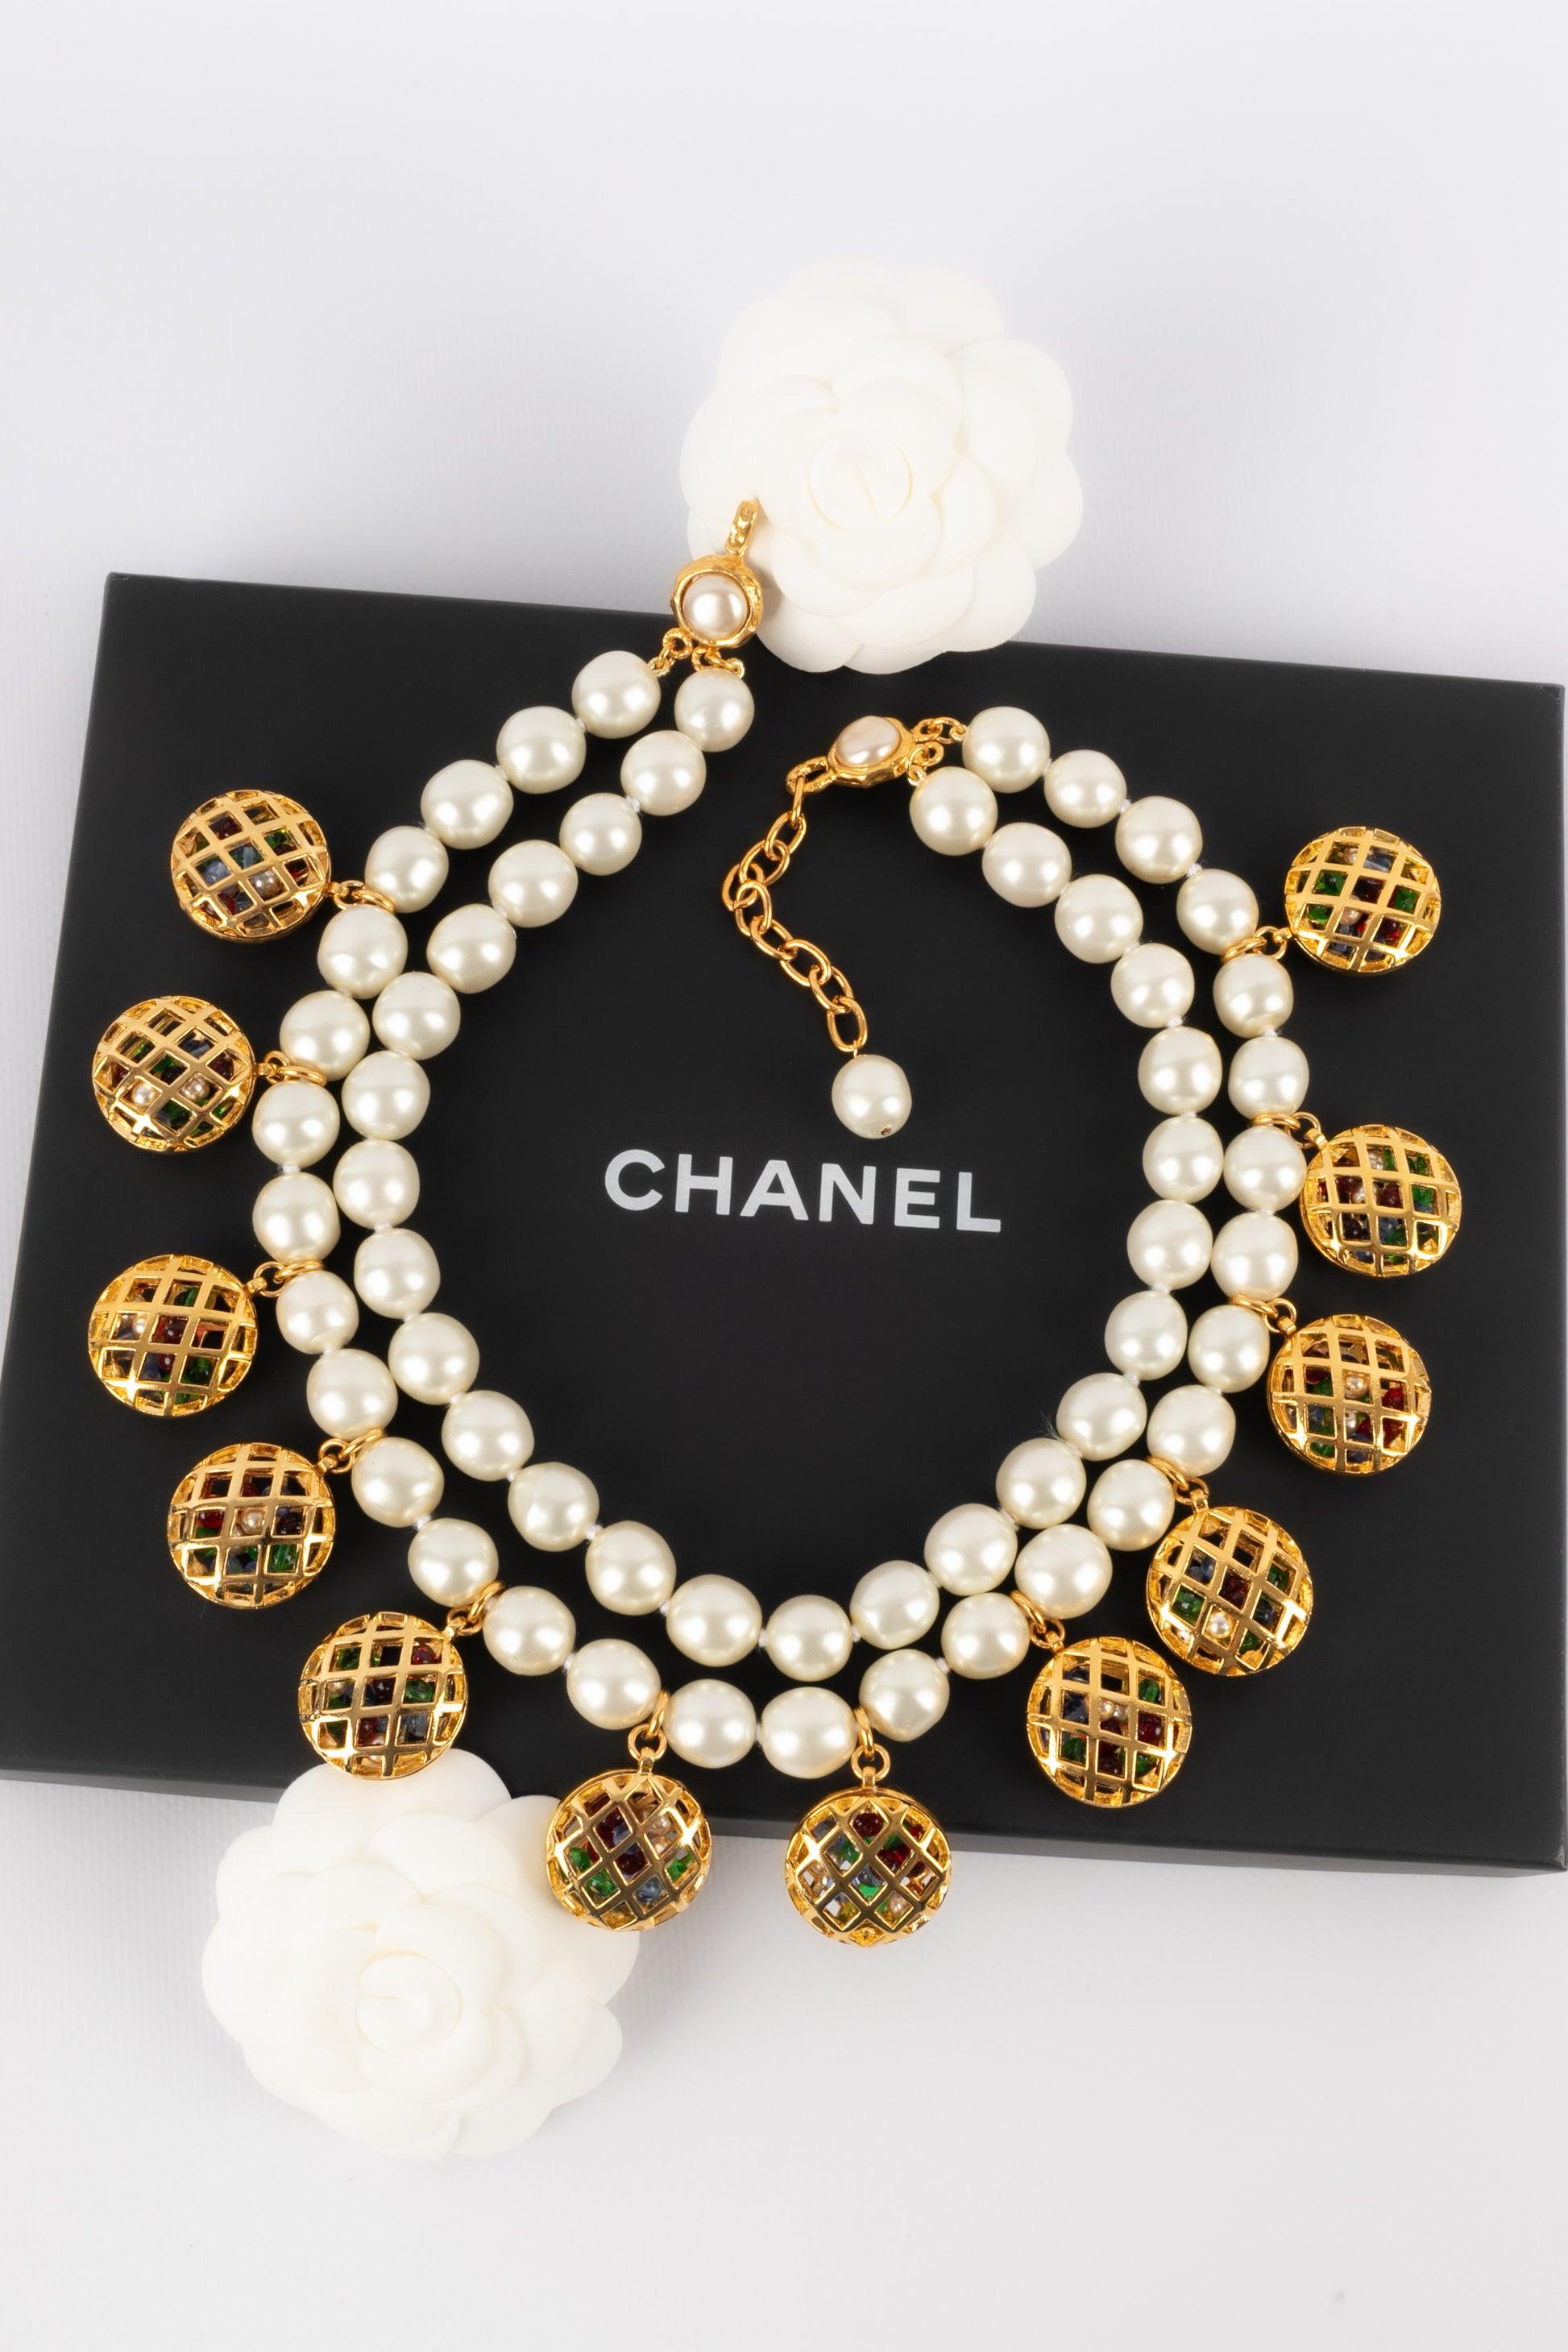 Chanel - (Made in France) Zweireihiges Perlenkollier mit durchbrochenen goldenen Metallcharms, die mehrfarbige Glaspastenperlen halten.

Zusätzliche Informationen: 
Zustand: Sehr guter Zustand
Abmessungen: Länge: von 47 cm bis 52 cm
 
Sellers